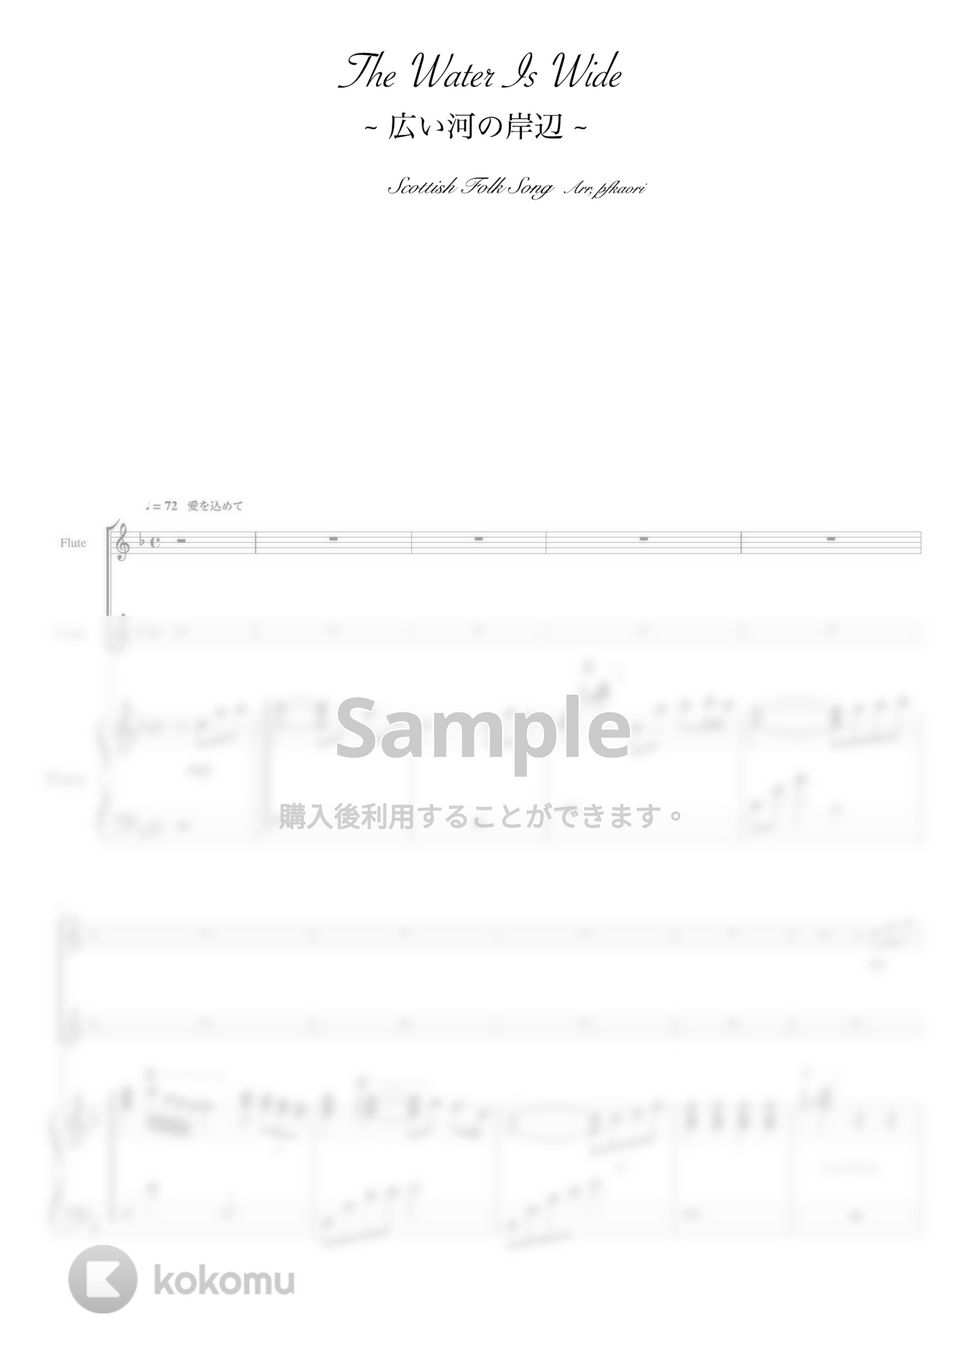 広い川の岸辺 (Fdur ・ピアノトリオ/フルート・バイオリン) by pfkaori